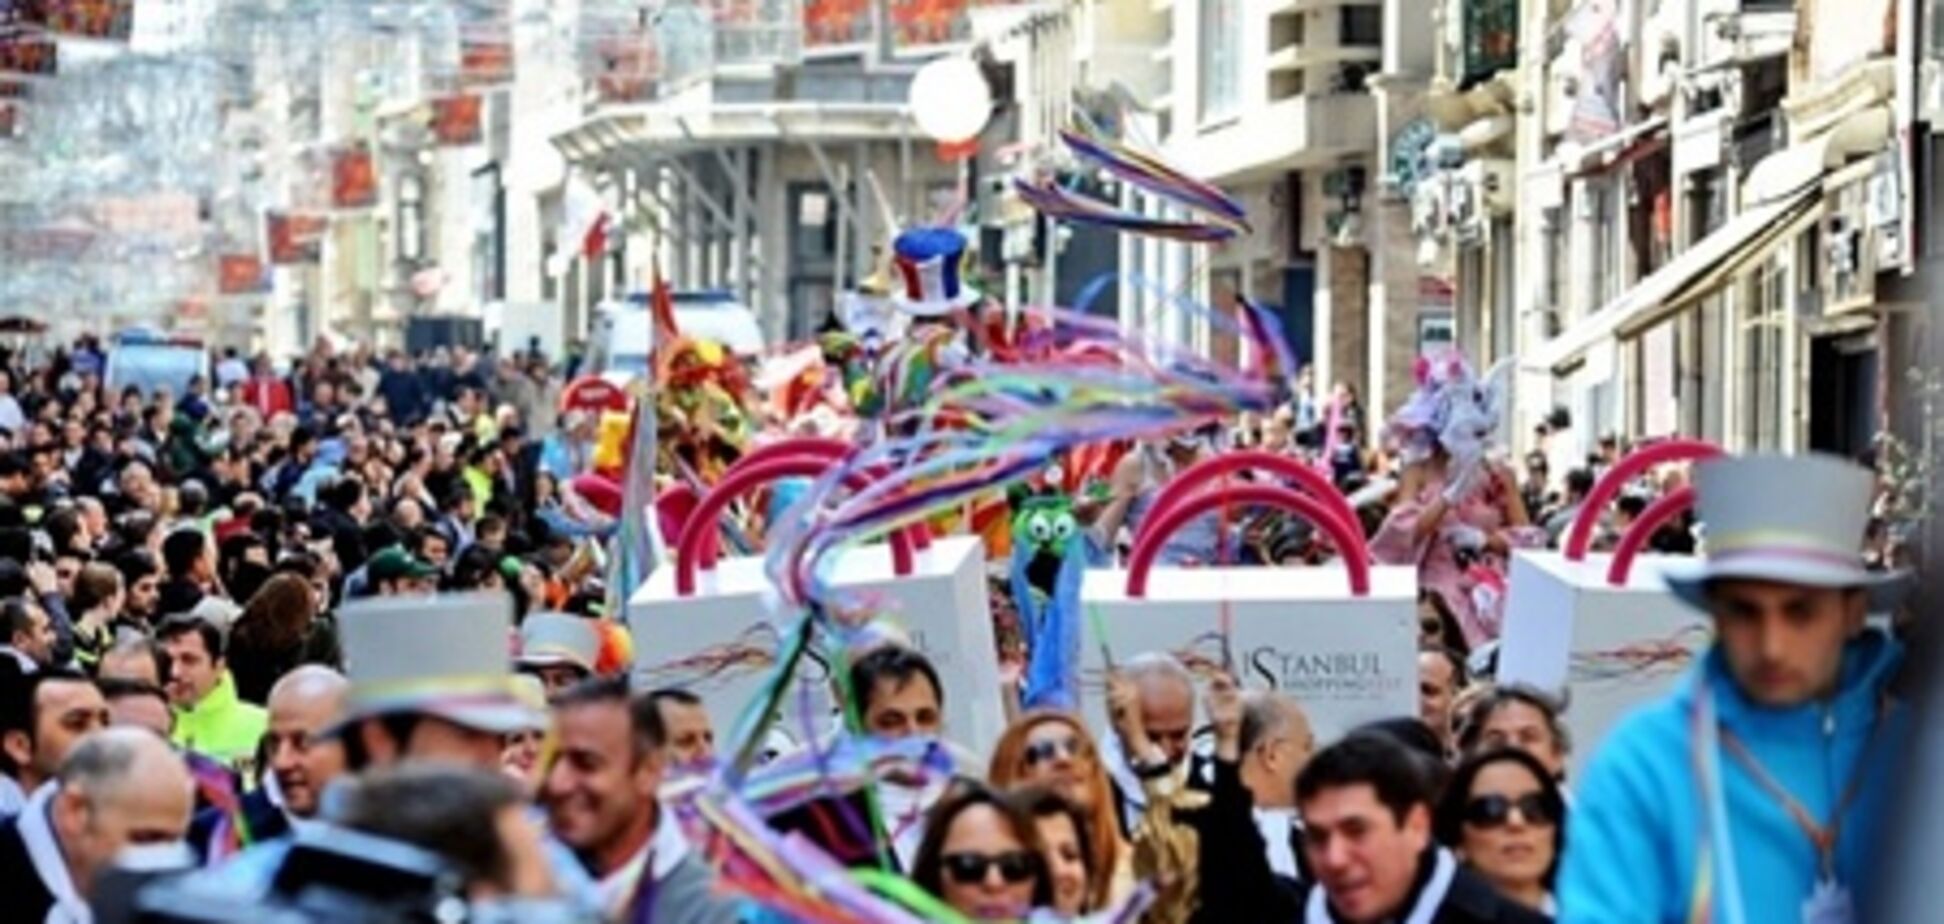 Весь июнь в Стамбуле пройдет Фестиваль Шоппинга